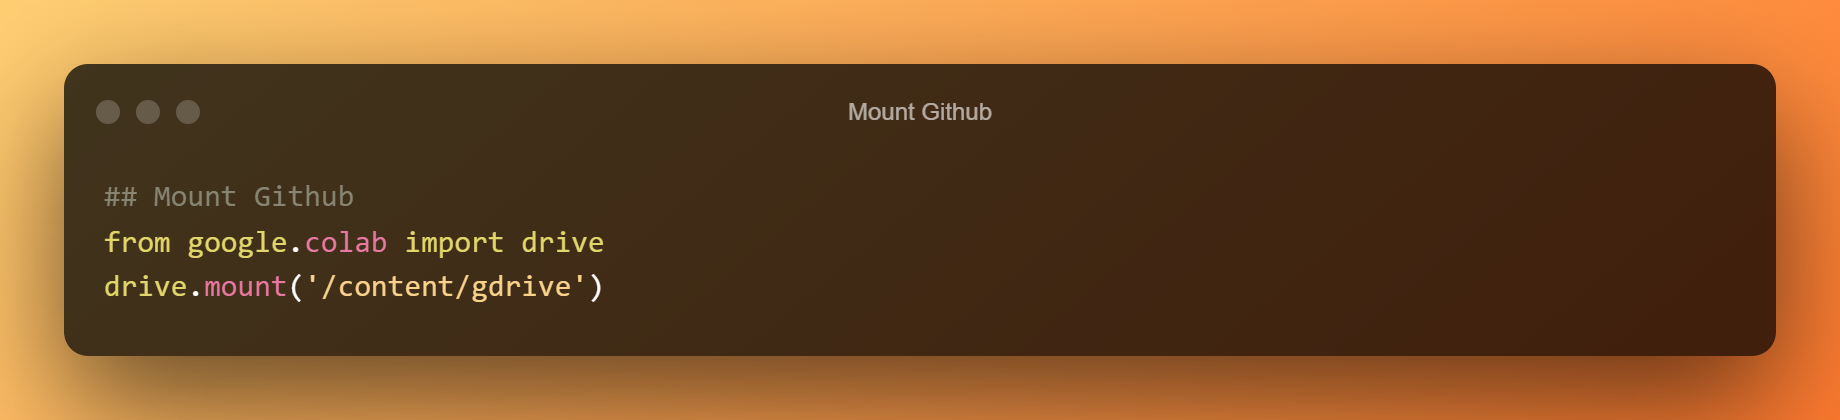 Mount Github